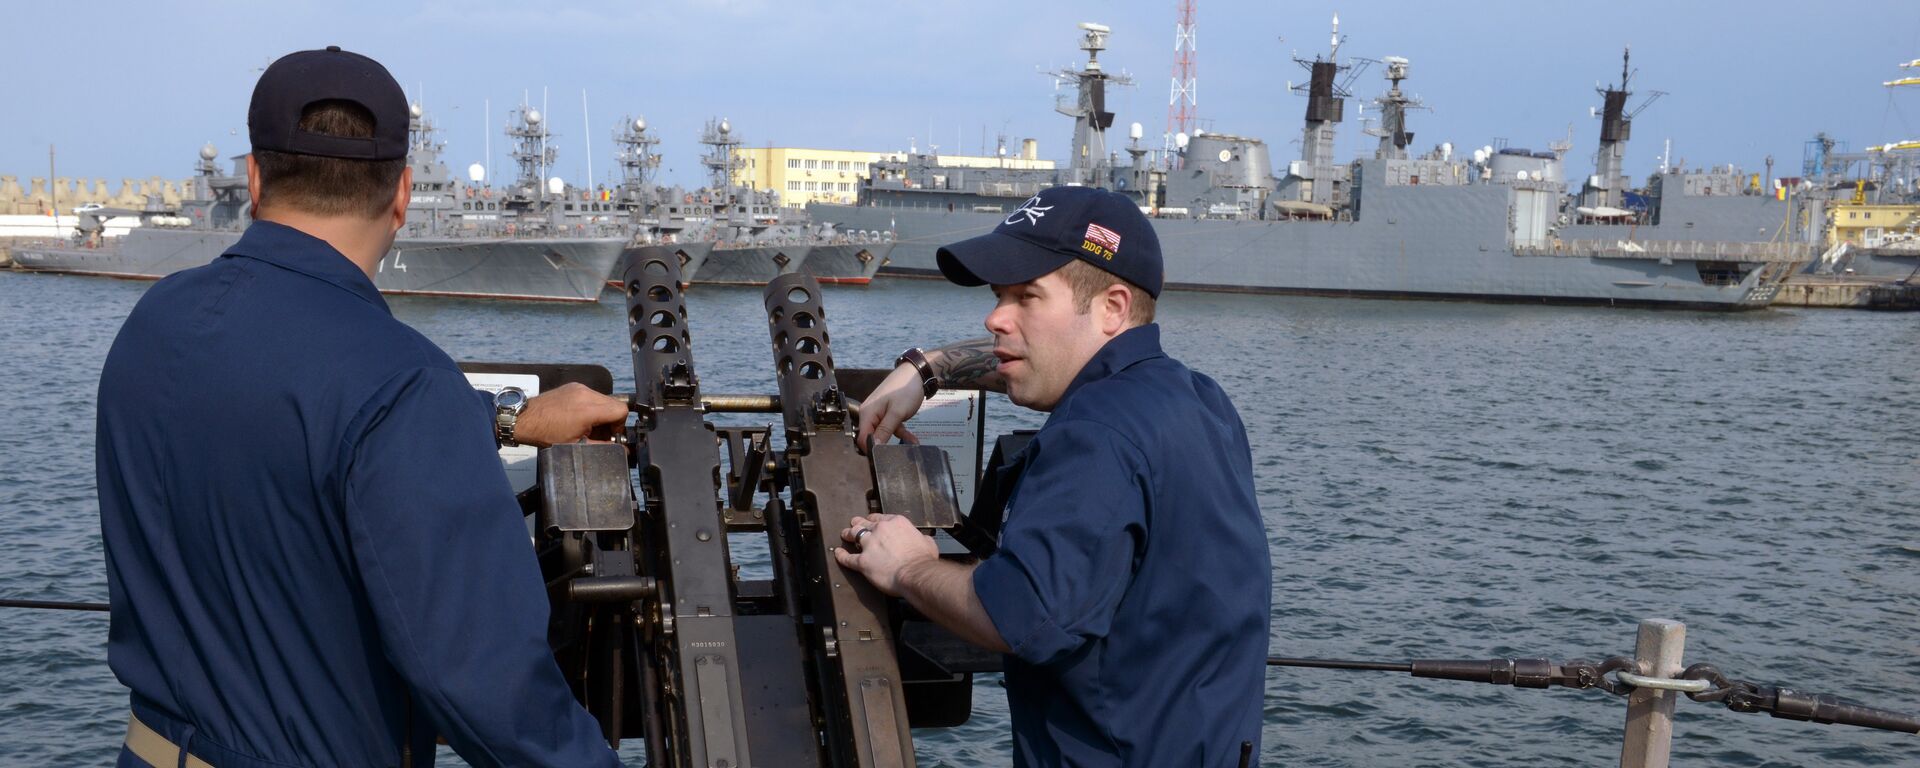 Personal de la Marina de EEUU a bordo del destructor USS Donald Cook en el astillero Constanta, en el puerto rumano con salida al mar Negro - Sputnik Mundo, 1920, 10.11.2021